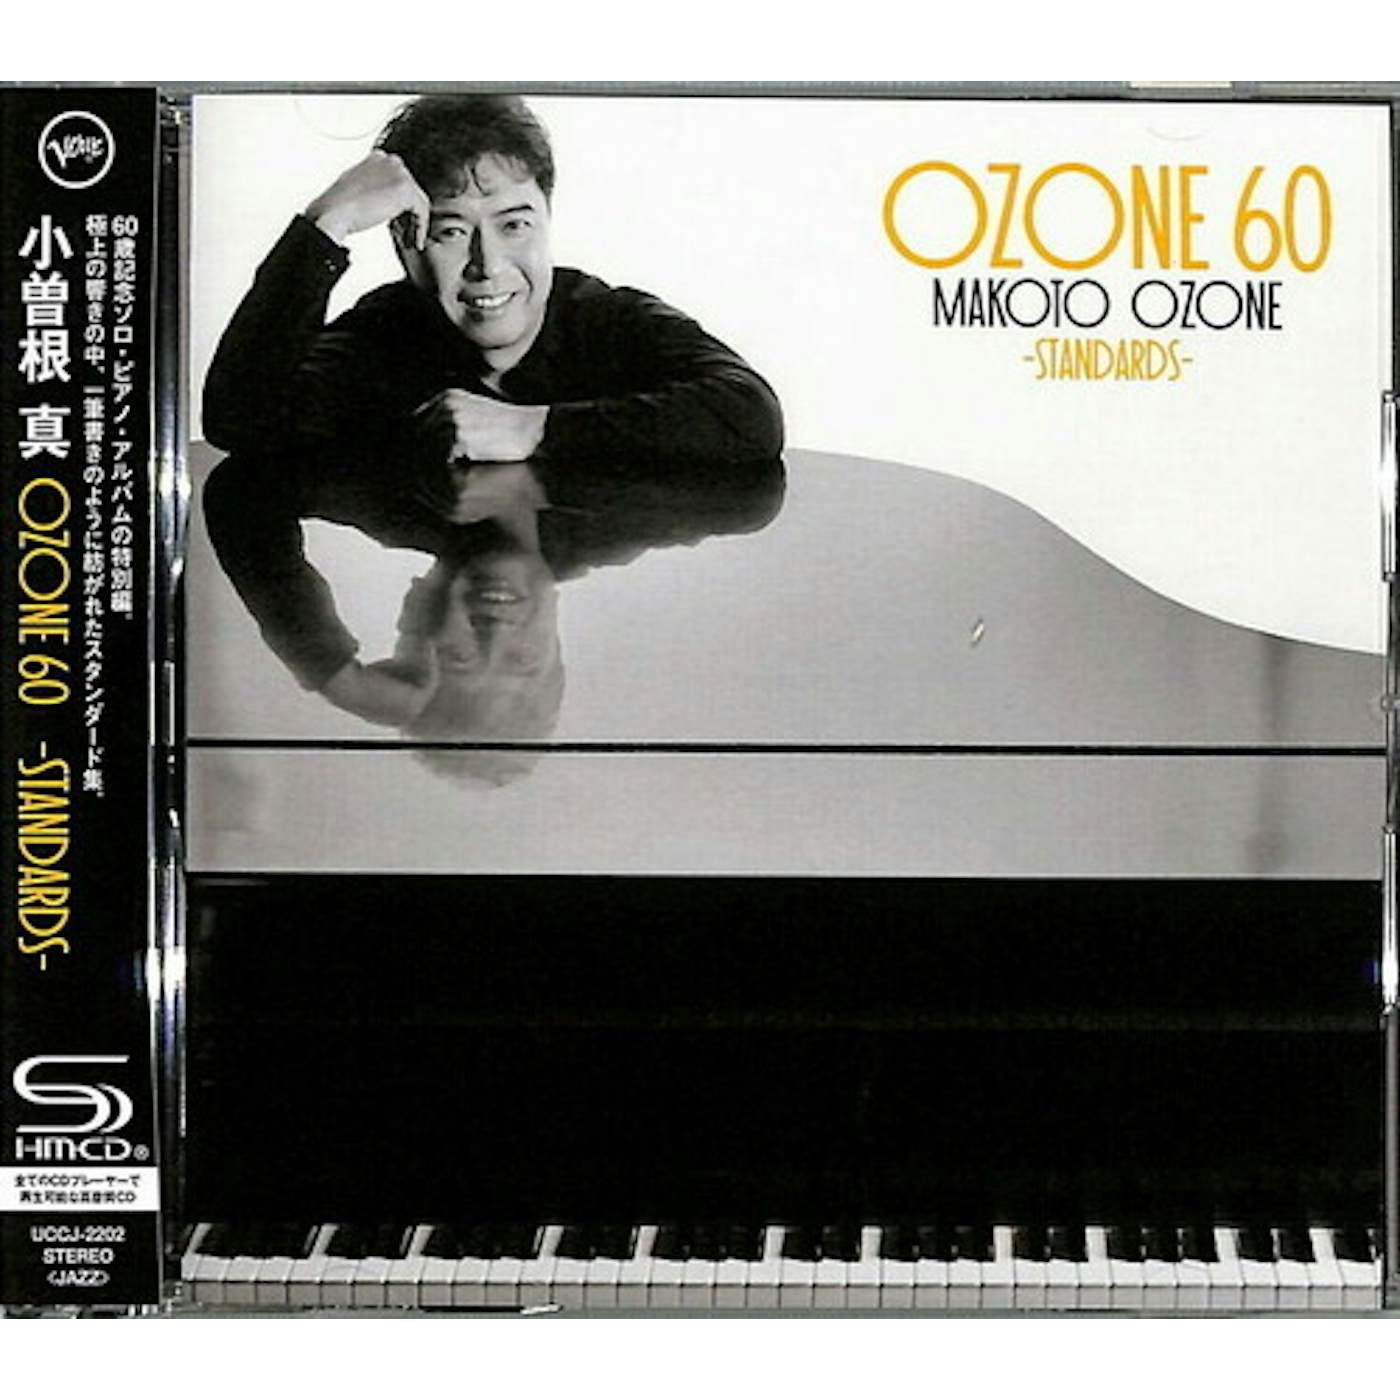 Makoto Ozone OZONE 60: STANDARDS CD